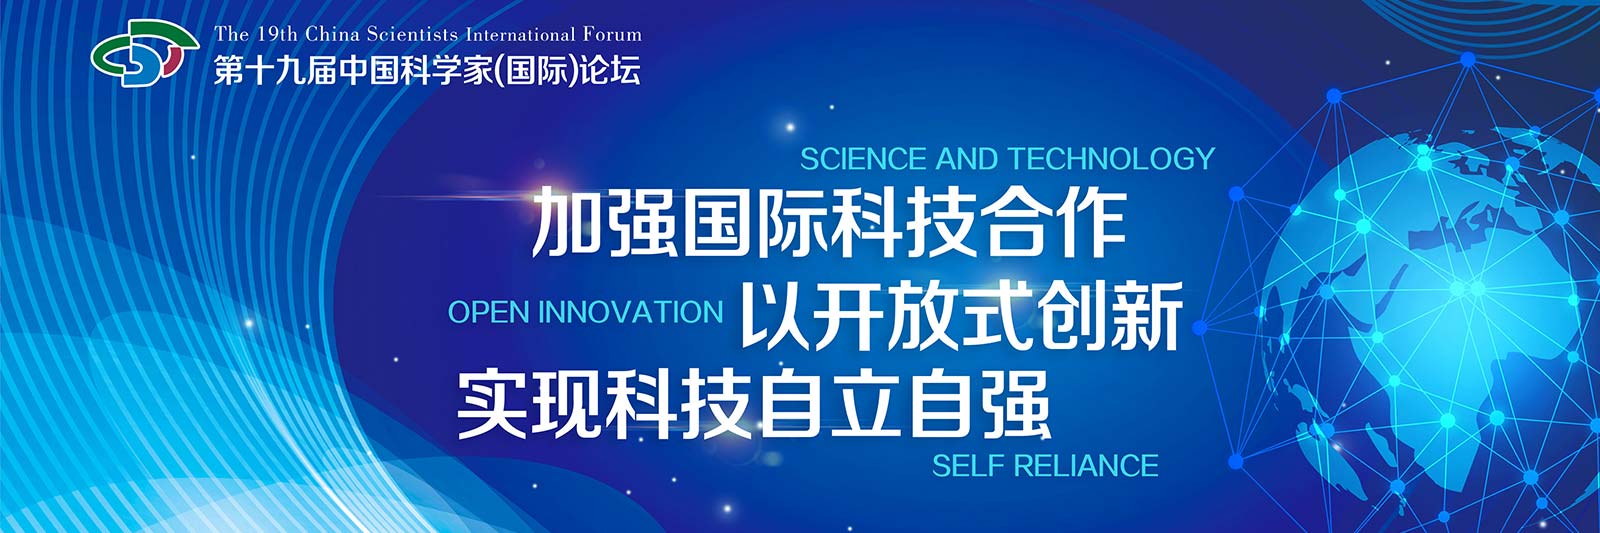 中国科学家论坛“2021科技创新示范单位”